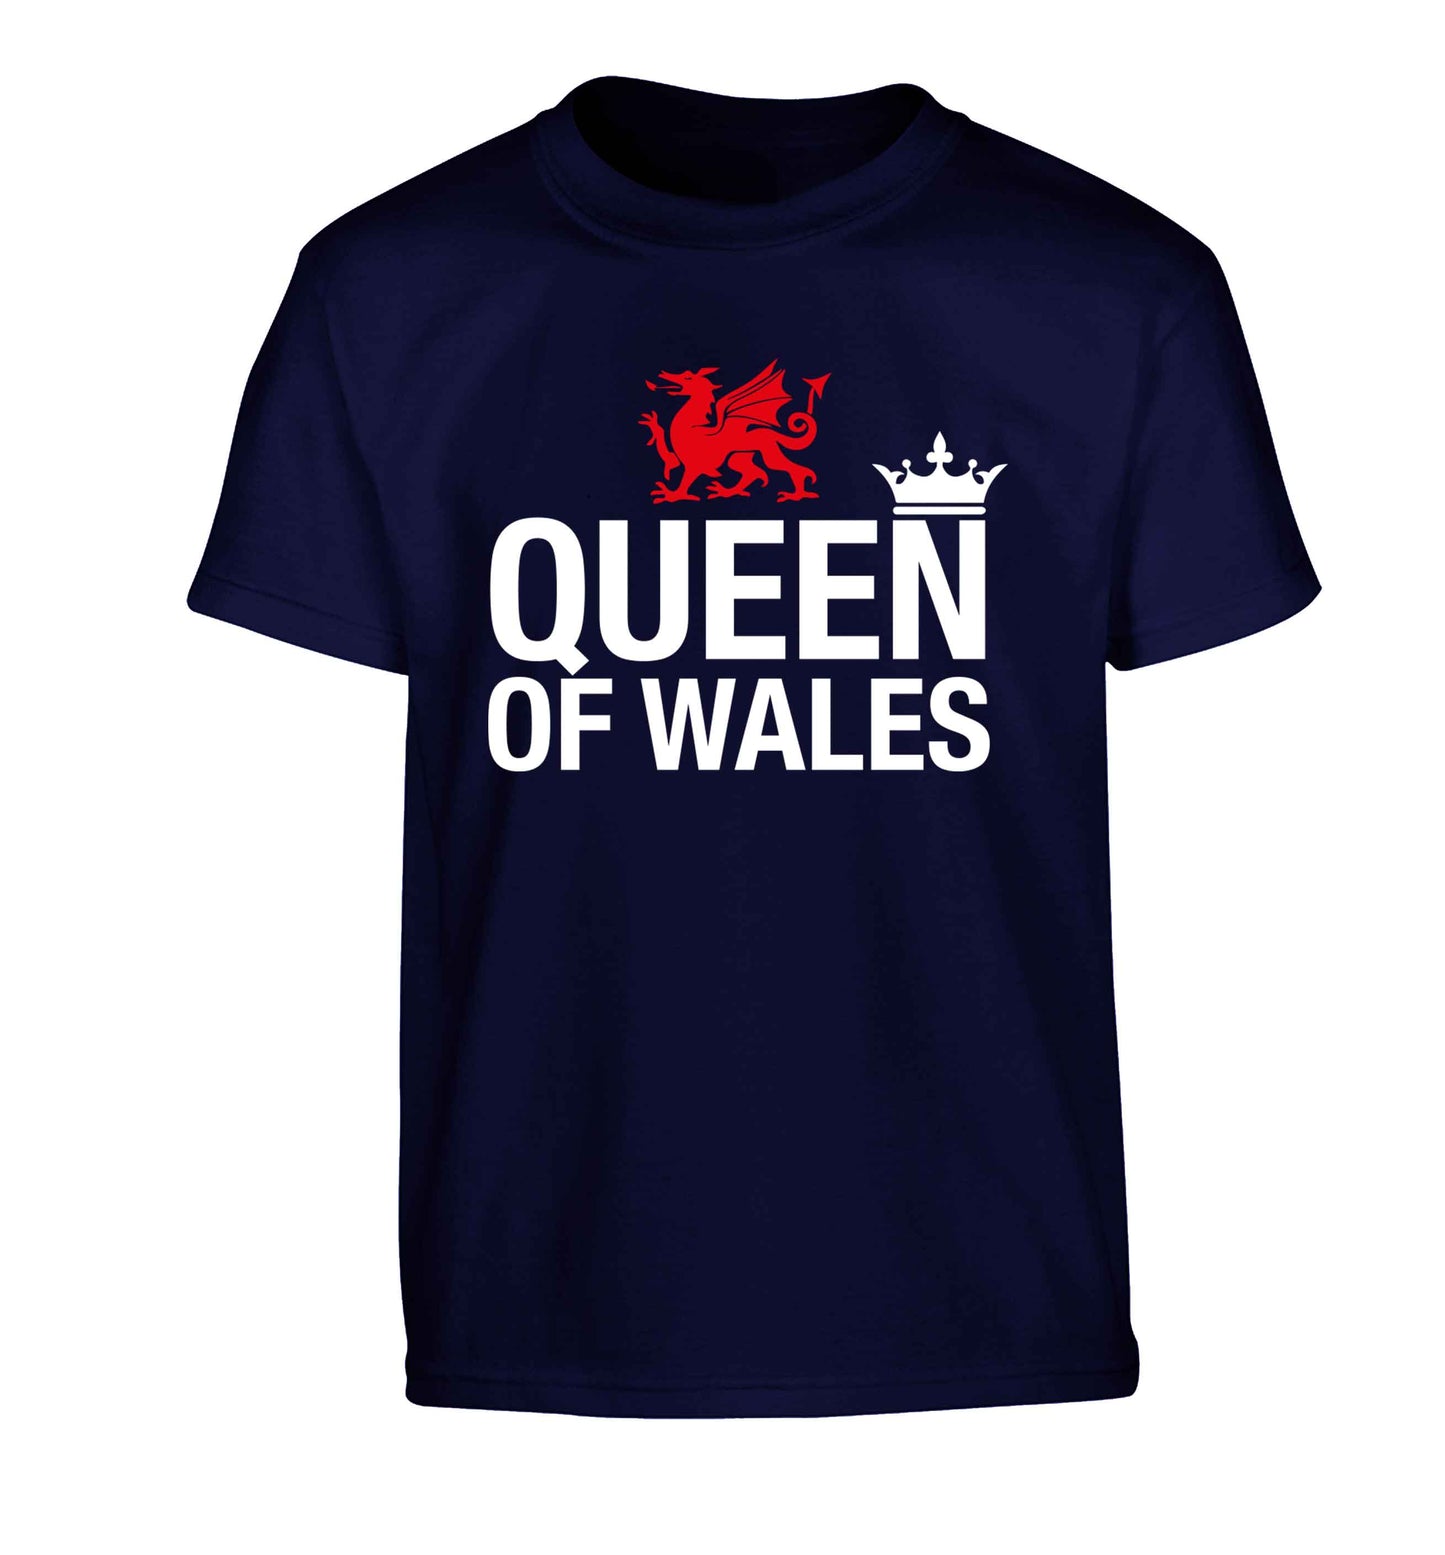 Queen of Wales Children's navy Tshirt 12-13 Years